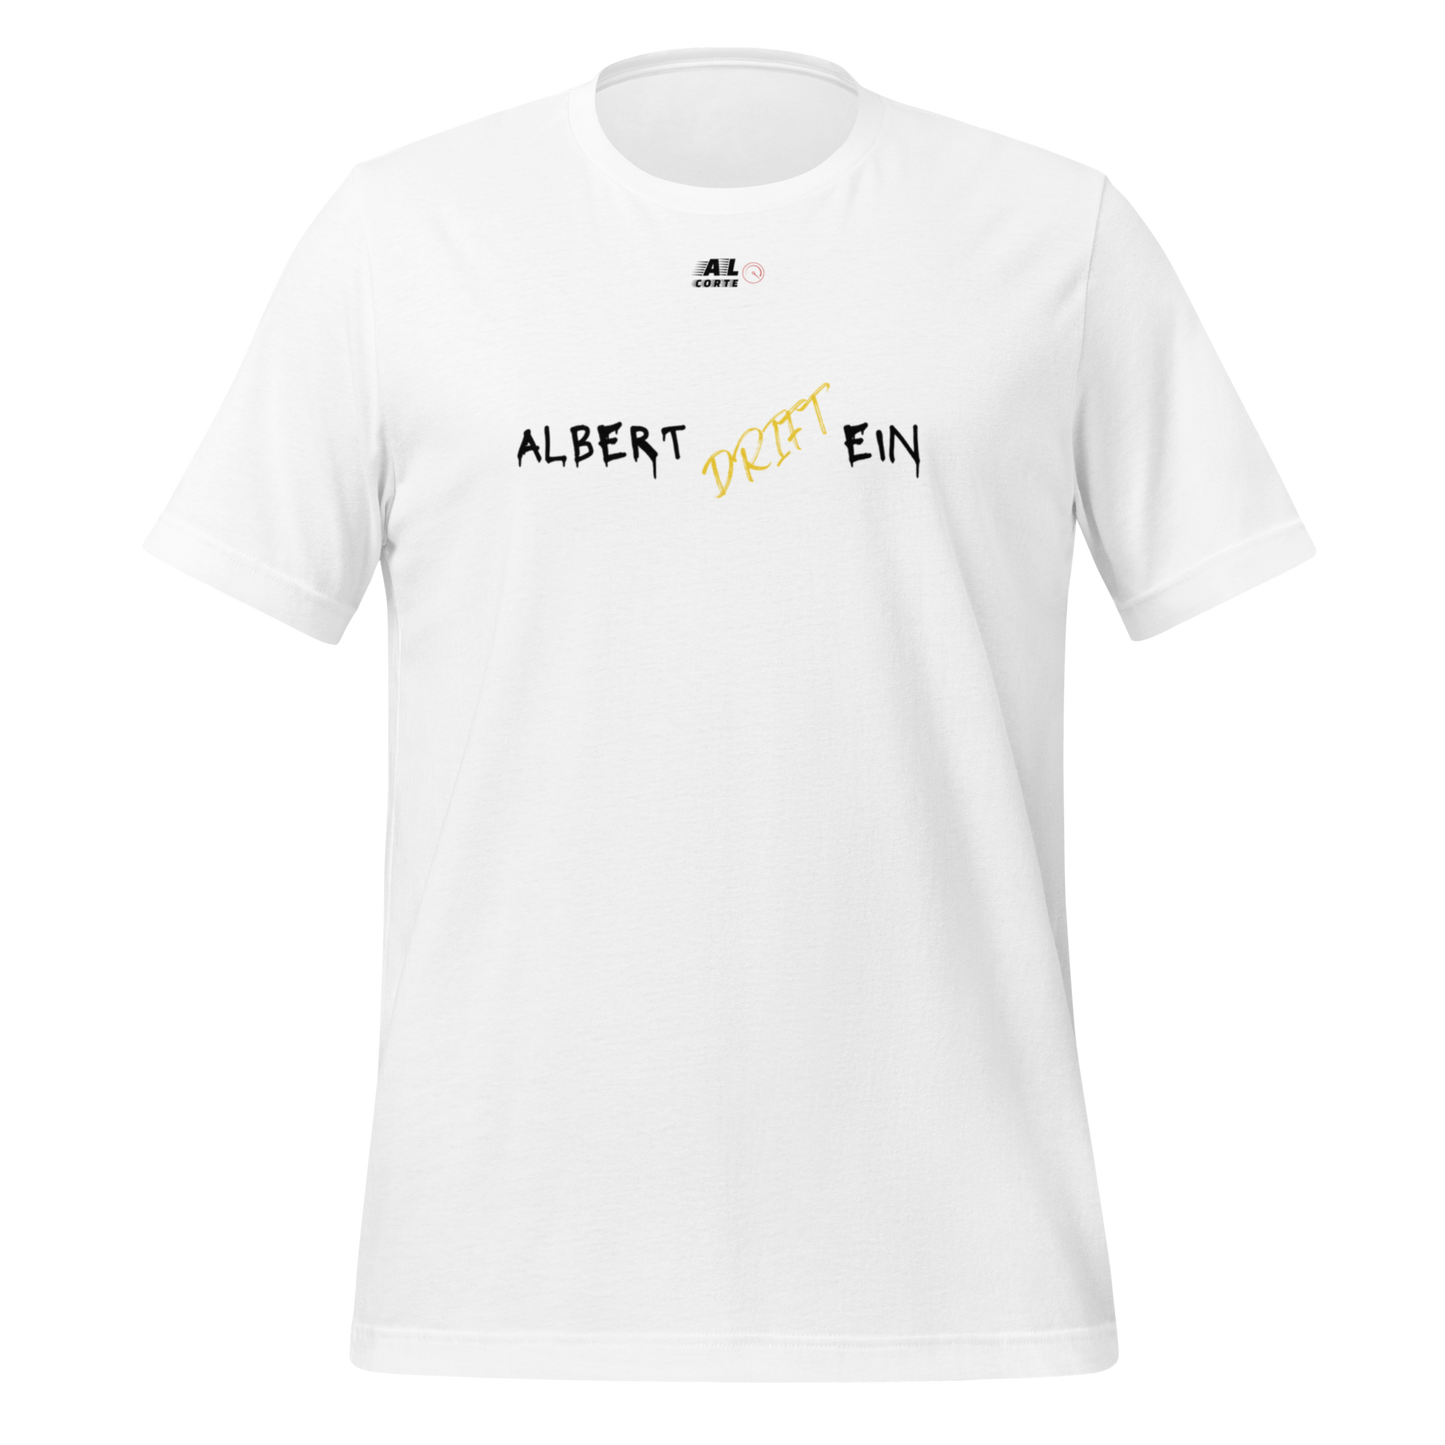 Camiseta "Albert Driftein"